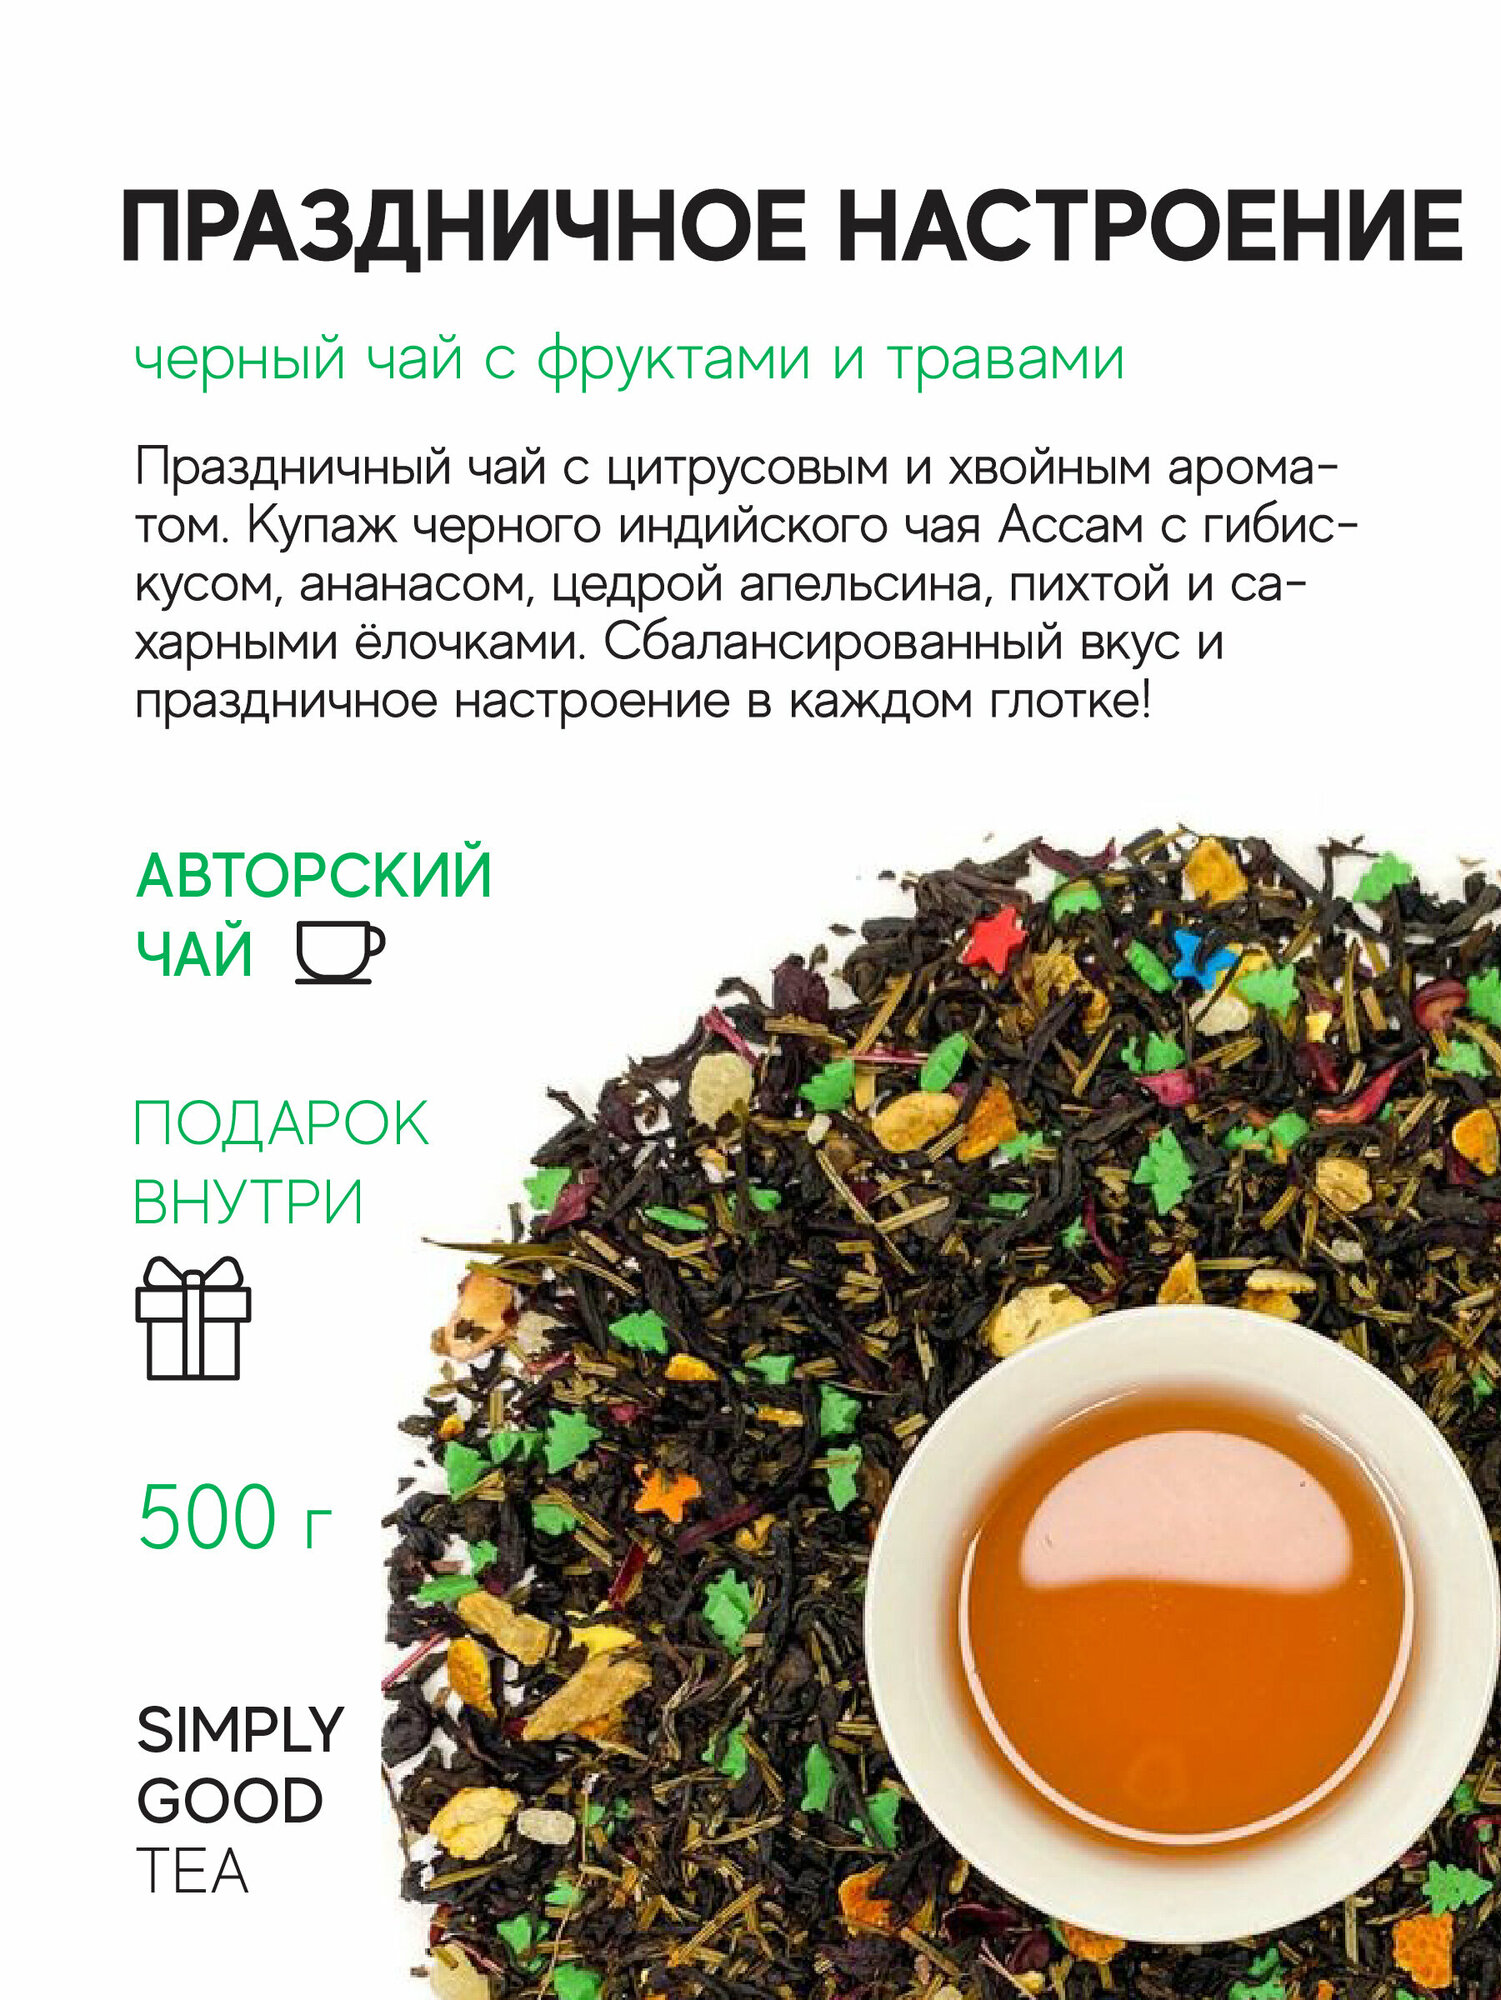 Чай черный с добавками Праздничной настроение, 500 гр